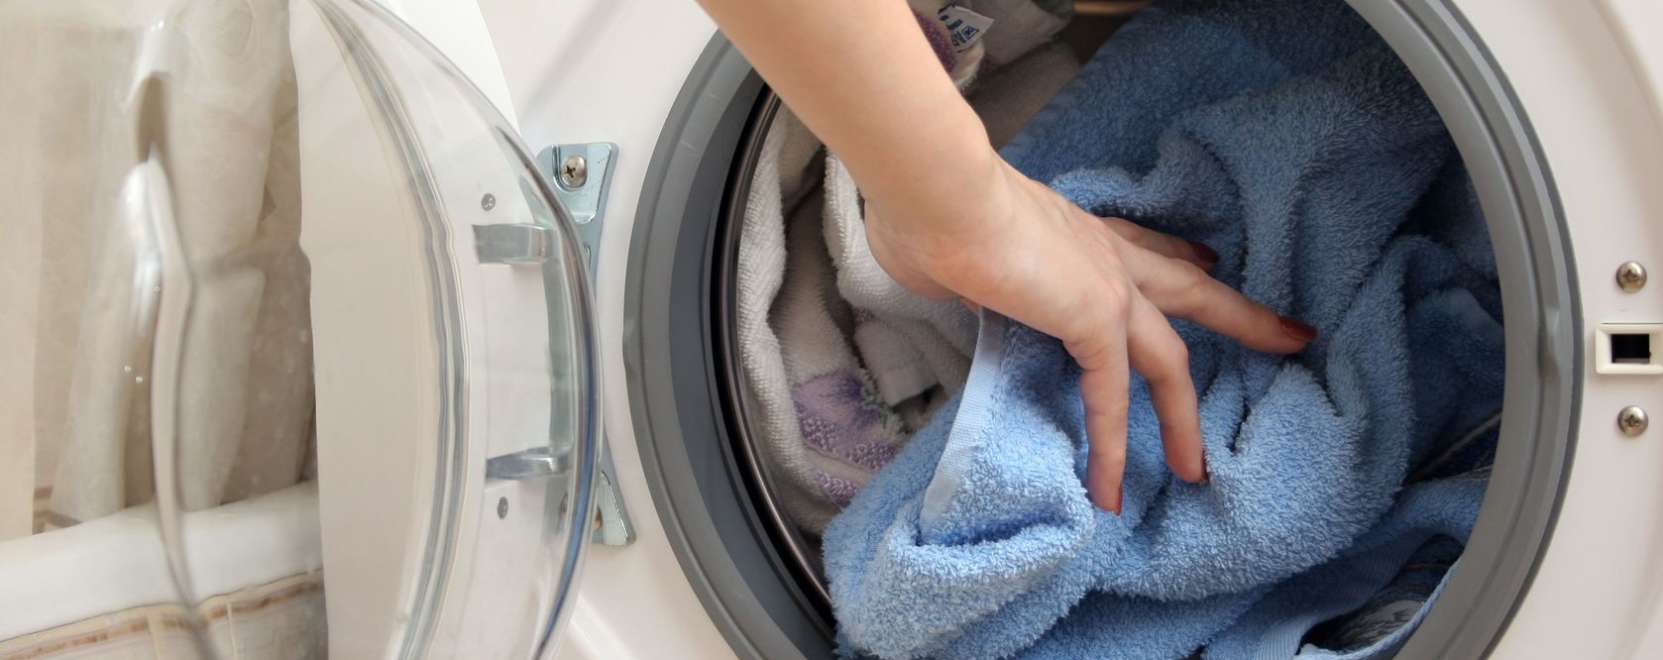 Az intelligens mosógép csendesebb a társainál